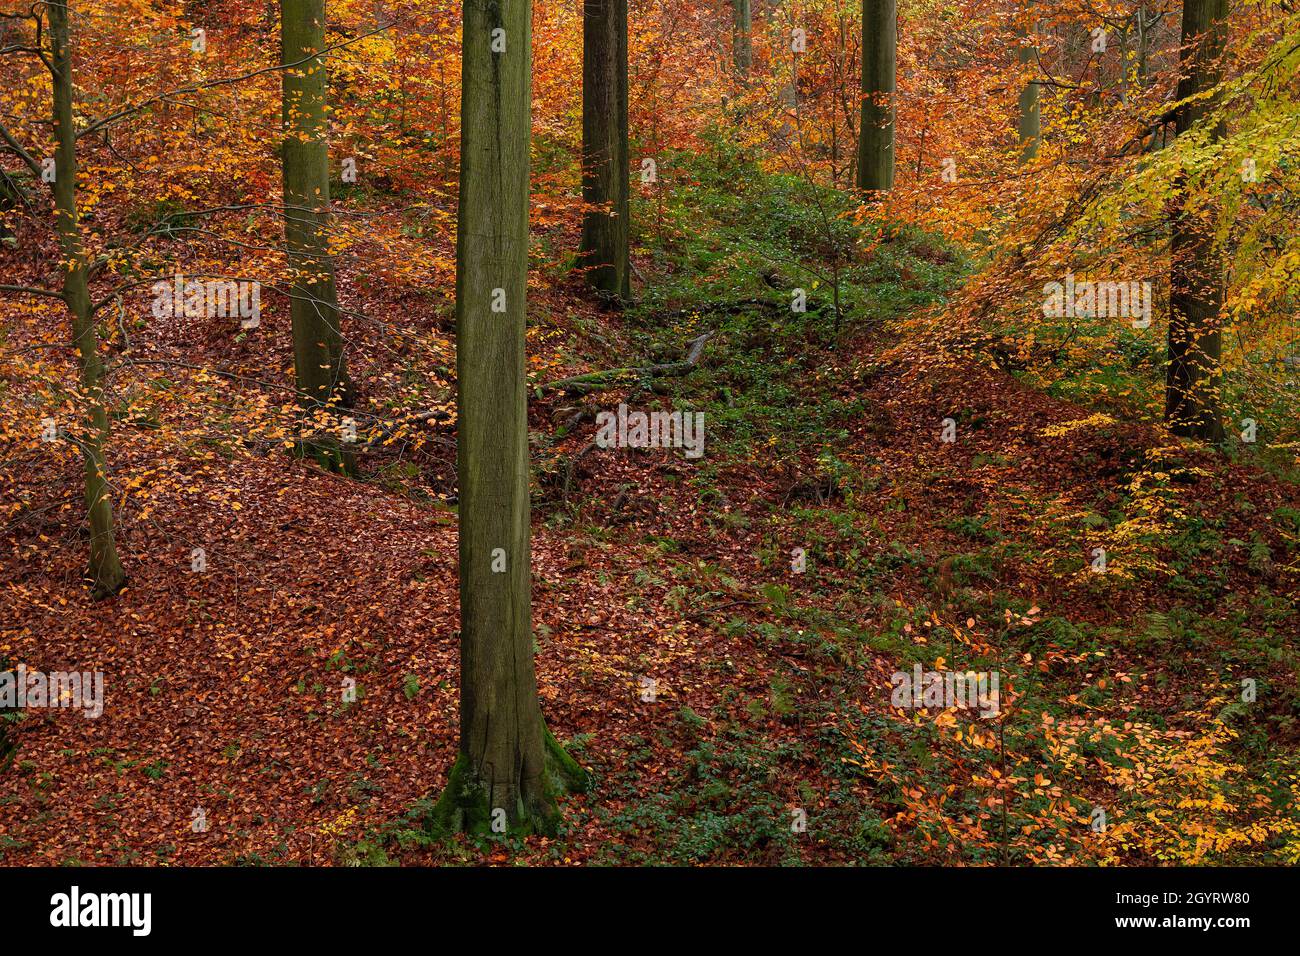 Forêt européenne de hêtres anciens (Fagus sylvatica) en automne Banque D'Images